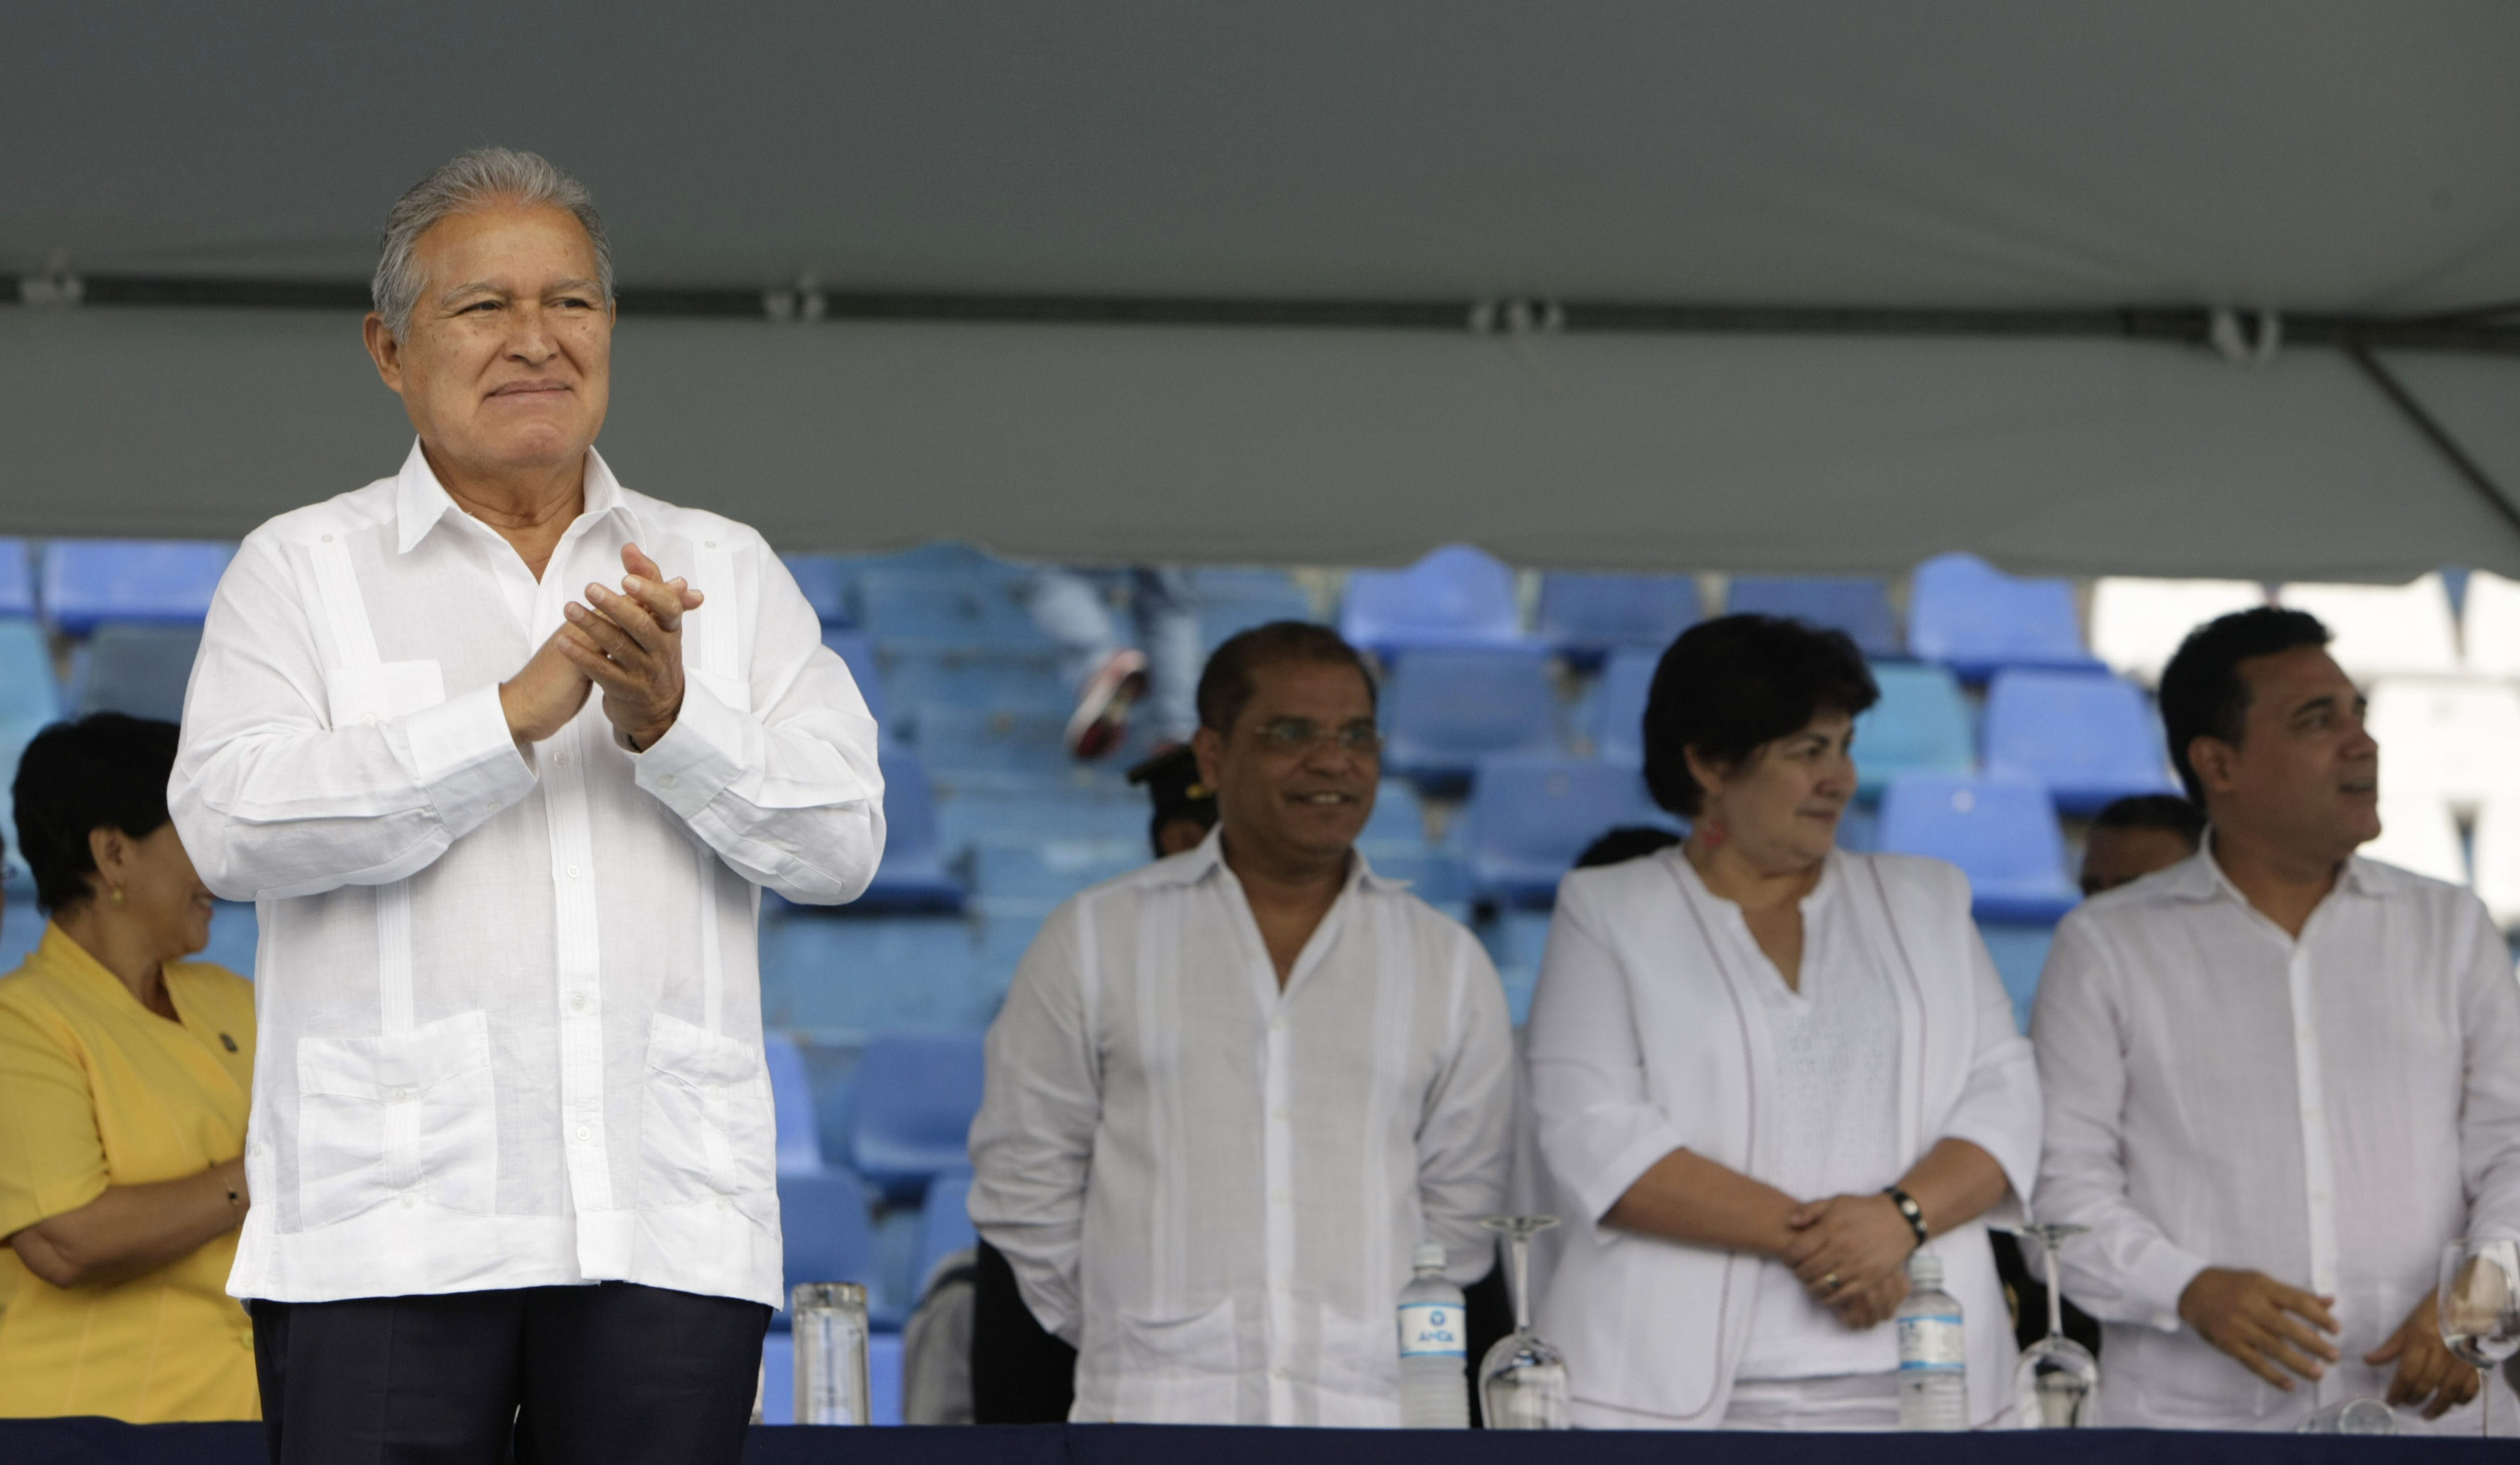 En El Salvador, el presidente Salvador Sánchez Cerén saludó al pueblo por el cumplimiento de los 193 años de la Independencia. (Foto: EFE)